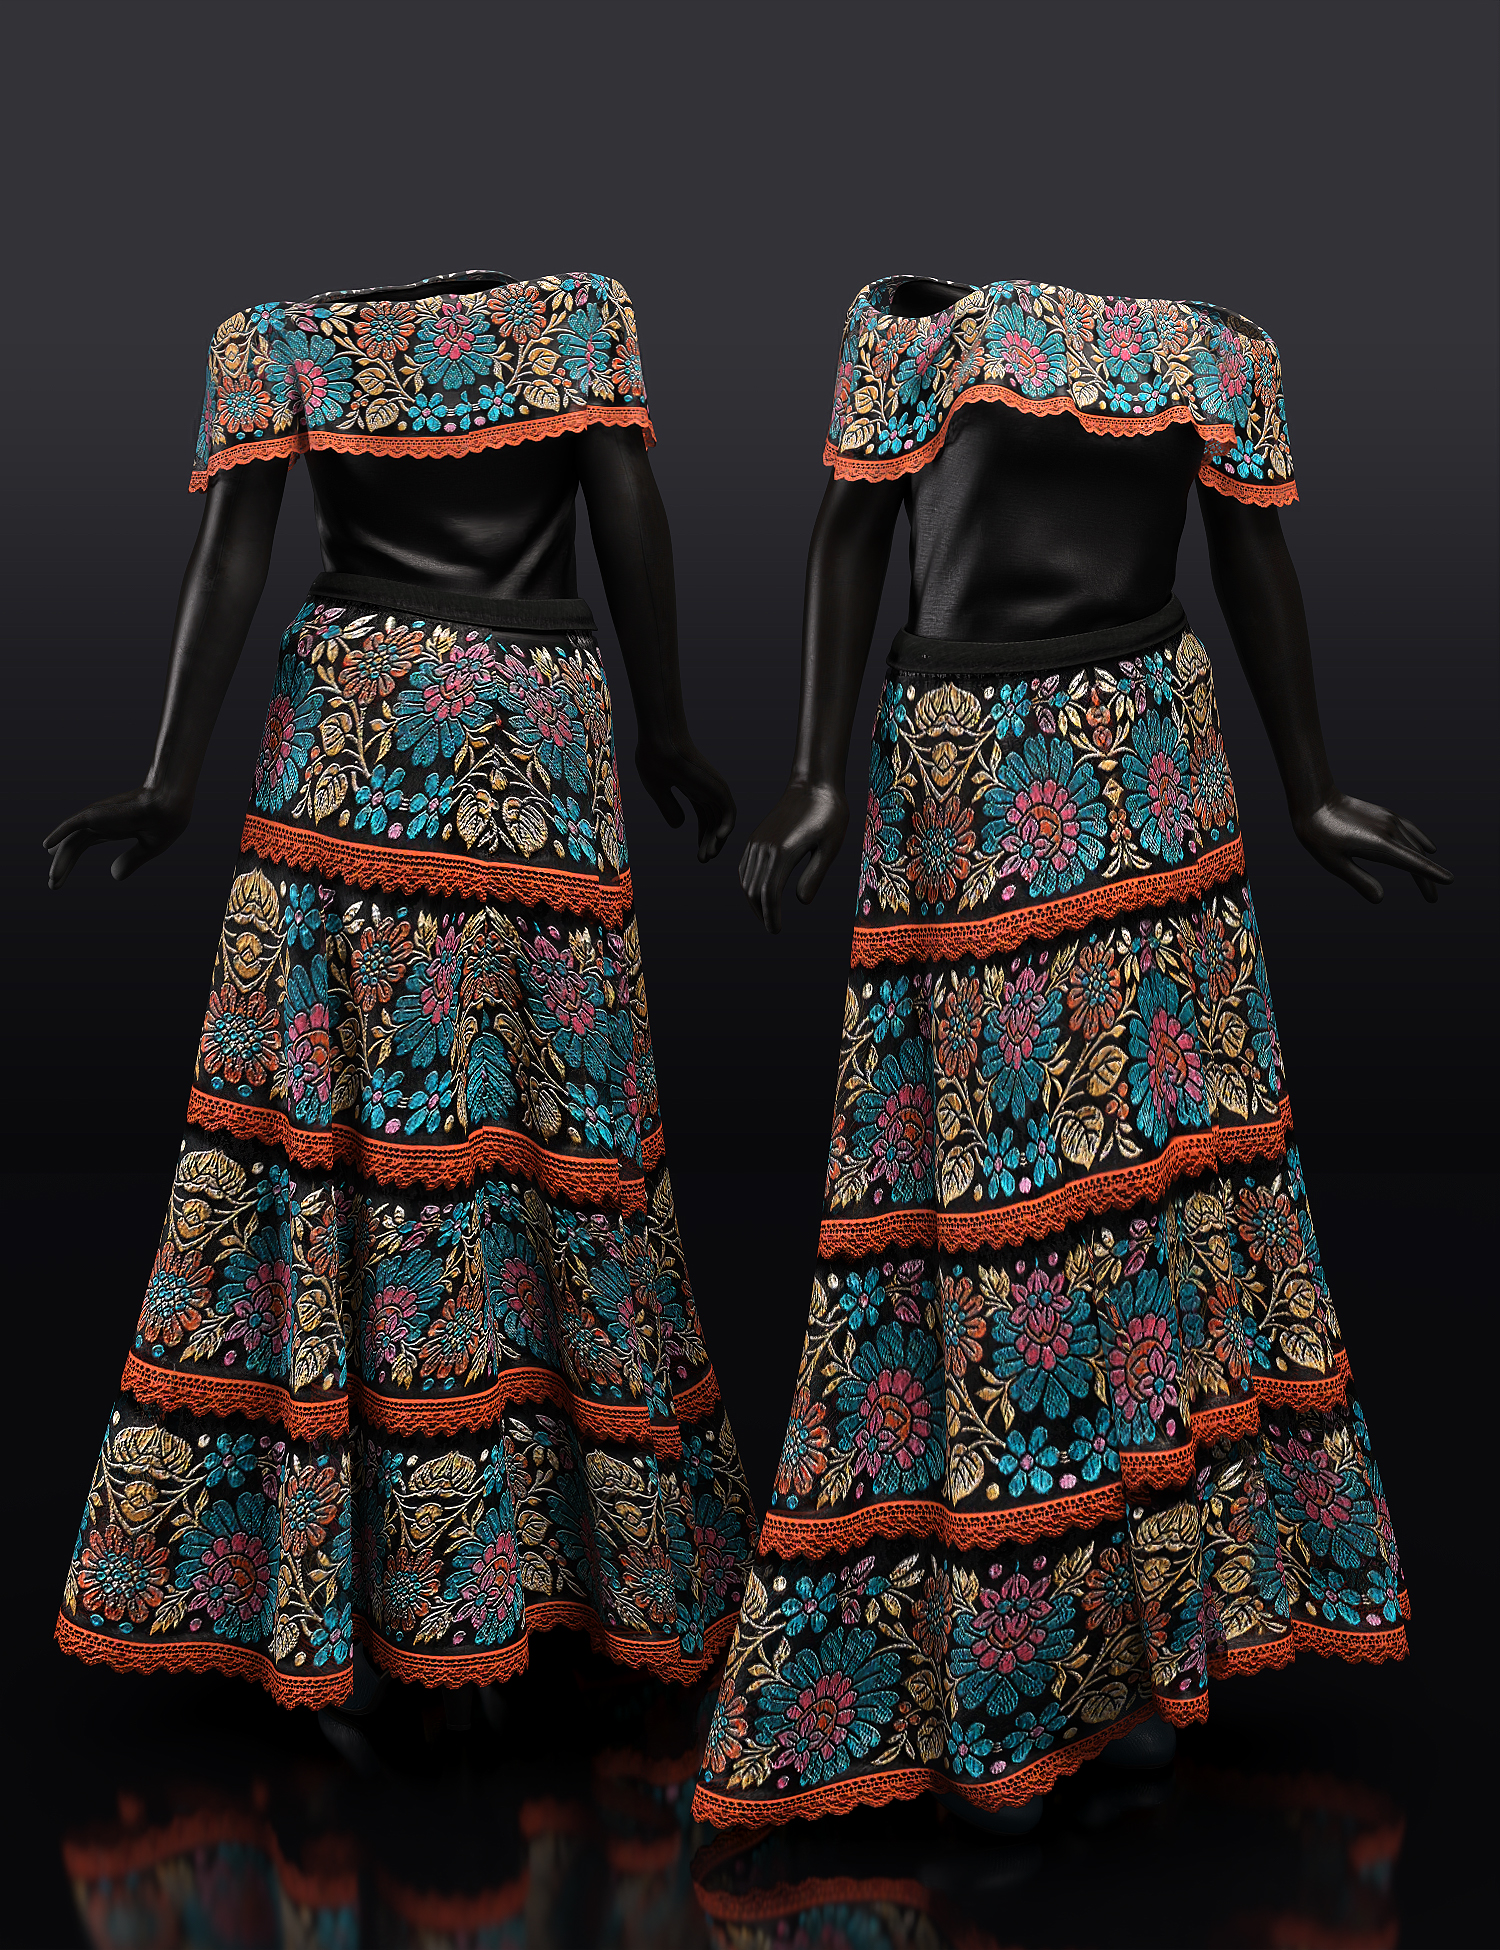 dForce Dia de los Muertos Outfit Textures by: Shox-Design, 3D Models by Daz 3D